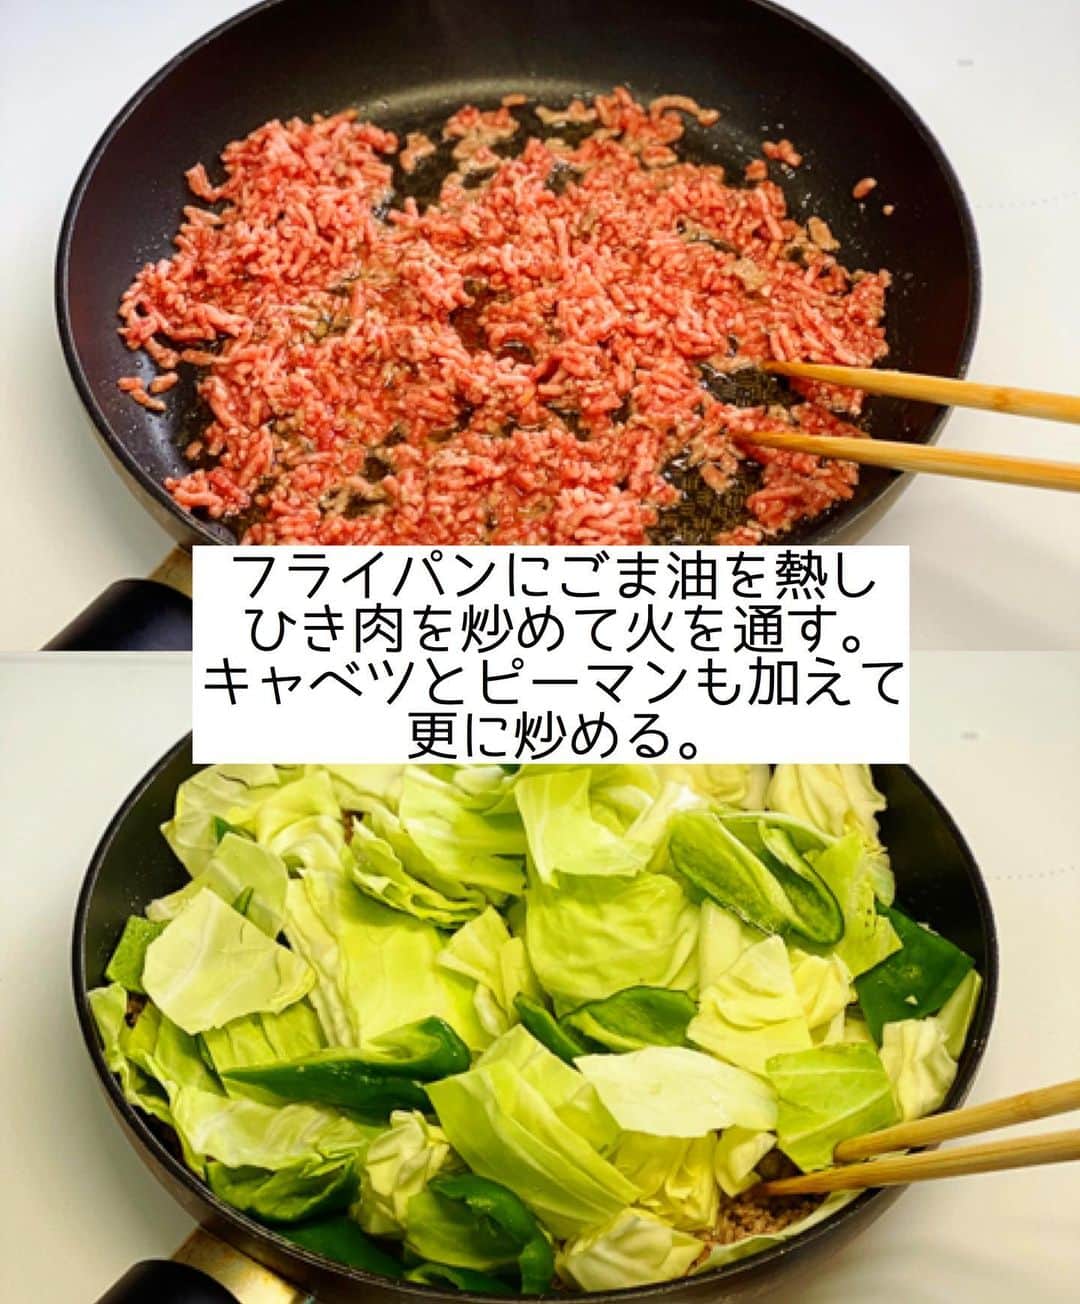 Mizuki【料理ブロガー・簡単レシピ】さんのインスタグラム写真 - (Mizuki【料理ブロガー・簡単レシピ】Instagram)「・﻿ 【#レシピ 】ーーーーーー﻿ ♡ひき肉de回鍋肉風♡﻿ (2品献立提案あり)﻿ ーーーーーーーーーーーー﻿ ﻿ ﻿ ﻿ おはようございます(*^^*)﻿ ﻿ 今日ご紹介させていただくのは﻿ ささっとできる炒め物♩﻿ お手軽なひき肉と野菜を﻿ 回鍋肉風の甘辛味噌で味付けしました♡﻿ 特別な材料要らずで﻿ あっという間に作れますよ〜！！﻿ ﻿ ひき肉がポロポロせずに食べやすく﻿ がっつりごはんがすすみます(*´艸`)﻿ コスパも抜群なので﻿ お気軽にお試し下さいね(*^^*)﻿ ﻿ ﻿ ﻿ ＿＿＿＿＿＿＿＿＿＿＿＿＿＿＿＿＿＿＿＿﻿ 【2人分】﻿ 合いびき肉...200g﻿ キャベツ...1/5個(250g)﻿ ピーマン...2個﻿ ごま油...小2﻿ ●水...大2﻿ ●味噌・酒・醤油・砂糖...各大1﻿ ●片栗粉...小1﻿ ●にんにくチューブ...2cm﻿ ﻿ 1.キャベツはざく切りにする。ピーマンは一口大に切る。●は合わせておく。﻿ 2.フライパンにごま油を中火で熱してひき肉を炒め、火が通ったらキャベツとピーマンも加えて更に炒める。﻿ 3.野菜がしんなりしたら●を加えて炒め合わせる。﻿ ￣￣￣￣￣￣￣￣￣￣￣￣￣￣￣￣￣￣￣￣﻿ ﻿ ﻿ ﻿ 《ポイント》﻿ ♦︎豚ひき肉で作っても♩﻿ ♦︎好みで豆板醤(小1/2〜)を加えても美味しいです♩﻿ ﻿ ﻿ ﻿ ﻿ ﻿ ﻿ ﻿ ＿＿＿＿＿＿＿＿＿＿＿＿＿＿＿＿﻿ 🥣🥣🥣 2品献立提案 🥣🥣🥣﻿ ￣￣￣￣￣￣￣￣￣￣￣￣￣￣￣￣﻿ 【合間に作れるおすすめ副菜】﻿ >しめじと厚揚げの煮物(P.33)﻿ >にんじんマカロニサラダ(P.89)﻿ (#Mizukiの2品献立 より)﻿ ﻿ 【献立の段取り】﻿ 副菜をレンジに入れてから﻿ メインを炒める🥢﻿ ￣￣￣￣￣￣￣￣￣￣￣￣￣￣￣￣﻿ ﻿ ﻿ ﻿ ﻿ ﻿ ⭐️発売中⭐️3刷重版が決まりました😭﻿ 本当にありがとうございます(涙)﻿ _____________________________________﻿ \15分でいただきます/﻿ 📕#Mizukiの2品献立 📕﻿ (9月24日発売・マガジンハウス)﻿ ￣￣￣￣￣￣￣￣￣￣￣￣￣￣￣￣￣﻿ ﻿ 忙しい私たちには﻿ 2品くらいがちょうどいい！﻿ 『しんどくない献立、考えました』﻿ ￣￣￣￣￣￣￣￣￣￣￣￣￣￣￣￣﻿ ﻿ ーーーーーPART.1 ーーーーー﻿ 【Mizukiのお墨つき！２品献立ベスト10】﻿ 約15分でできる10献立をご紹介！﻿ メインは全部フライパン﻿ 副菜はレンチンor混ぜるだけ♡﻿ ﻿ ーーーーーPART.2 ーーーーー﻿ 【フライパンひとつ！今夜のメインおかず】﻿ 献立の主役になる肉や魚のおかず50品！﻿ Part3の副菜と組み合わせれば﻿ 献立のバリエーションが広がりますよ♩﻿ ﻿ ーーーーー PART.3 ーーーーー﻿ 【合間に作れる！ 野菜別かんたん副菜】﻿ レンチンor和えるだけの副菜レシピを﻿ 素材別にたっぷり収録♩﻿ ﻿ ーーーーー番外編ーーーーー﻿ 【ひとつで満足！ご飯＆麺】﻿ 【具だくさん！おかずスープ】﻿ 【オーブンいらずのおやつレシピ】﻿ ￣￣￣￣￣￣￣￣￣￣￣￣￣￣￣￣￣￣﻿ (ハイライトにリンク🔗あります💗)﻿ ﻿ ﻿ ﻿ ﻿ ﻿ ＿＿＿＿＿＿＿＿＿＿＿＿＿＿＿＿＿＿﻿ 🔔テレビ出演のお知らせ🔔﻿ 【NHK Eテレ #まる得マガジン 】﻿ 2回目の放送が始まっています✨﻿ 昼(11：55〜 月-木) ﻿ 夜(21：55〜 月-木)﻿ 俳優の武田航平さん﻿ (@kouhei_takeda.official )と一緒に﻿ 絶品おやつから意外なランチまで﻿ たくさん作らせていただきますよ♩﻿ ﻿ ＊NHKテキスト発売中📕﻿ ￣￣￣￣￣￣￣￣￣￣￣￣￣￣￣￣￣￣﻿ ﻿ ﻿ ﻿ ﻿ ﻿ ＿＿＿＿＿＿＿＿＿＿＿＿＿＿＿＿＿＿﻿ レシピを作って下さった際や﻿ レシピ本についてのご投稿には﻿ タグ付け( @mizuki_31cafe )して﻿ お知らせいただけると嬉しいです😊💕﻿ ￣￣￣￣￣￣￣￣￣￣￣￣￣￣￣￣￣￣﻿ ﻿ ﻿ ﻿ ﻿ #ひき肉#キャベツ#味噌炒め#回鍋肉#Mizuki#簡単レシピ#時短レシピ#節約レシピ#料理#フーディーテーブル#マカロニメイト#おうちごはん#デリスタグラマー#料理好きな人と繋がりたい#食べ物#料理記録#おうちごはんlover#写真好きな人と繋がりたい#foodpic#cooking#recipe#lin_stagrammer#foodporn#yummy#f52grams#ひき肉回鍋肉m」11月24日 7時04分 - mizuki_31cafe